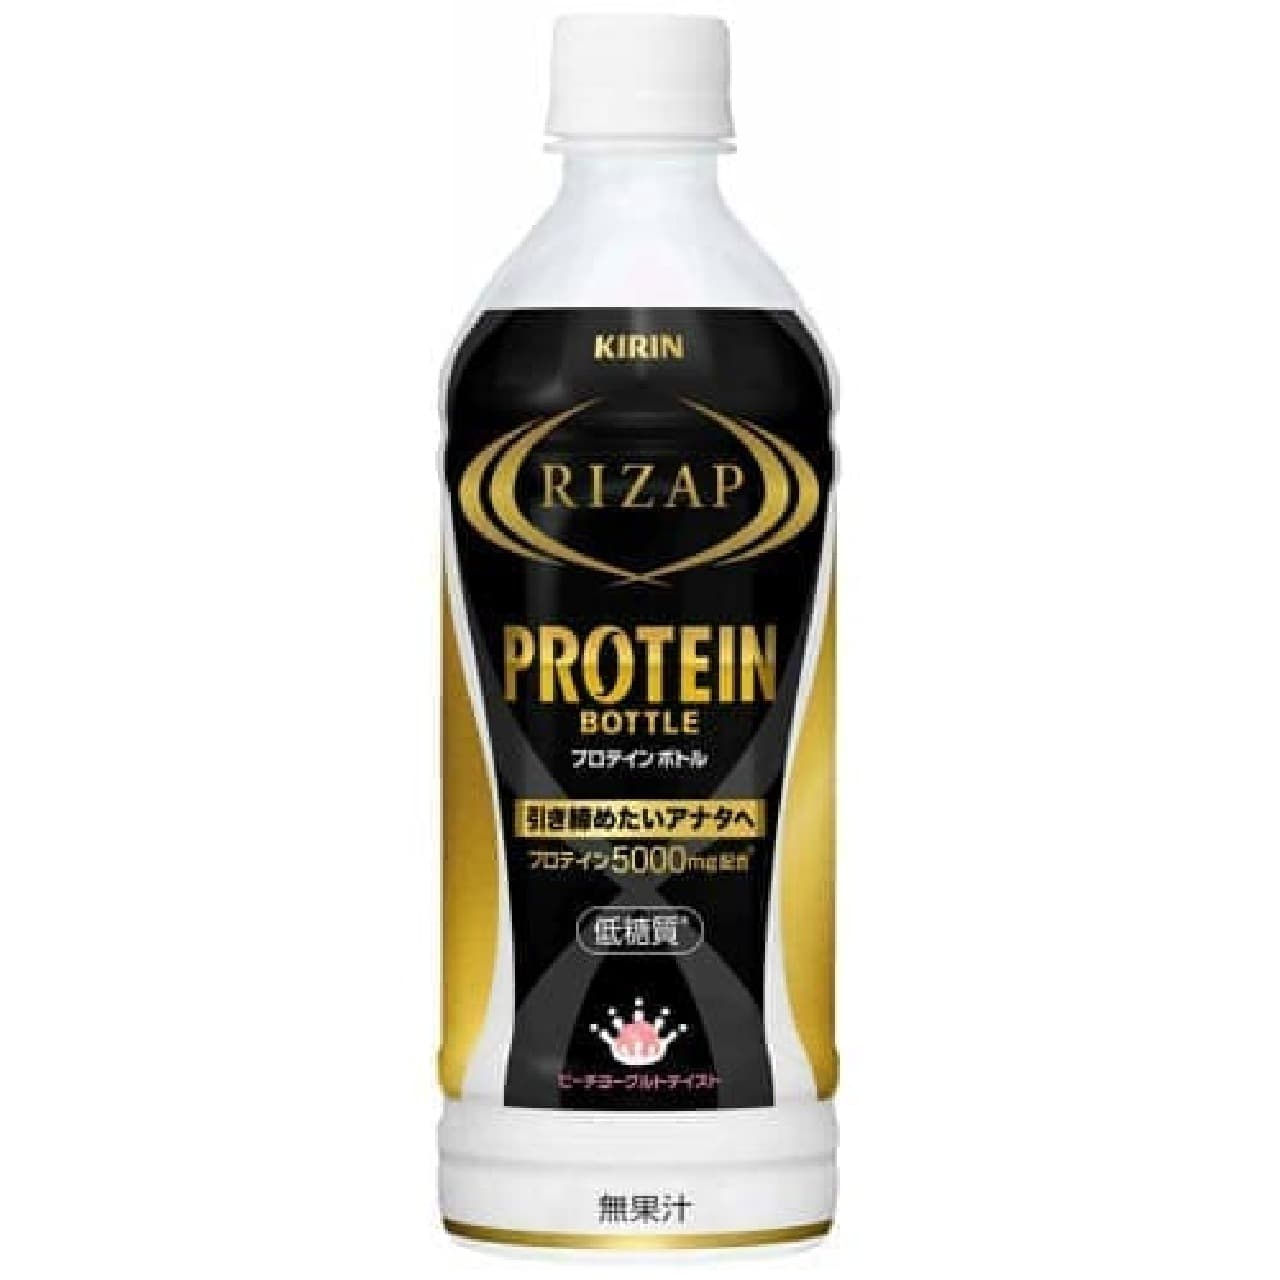 Rizap protein bottle